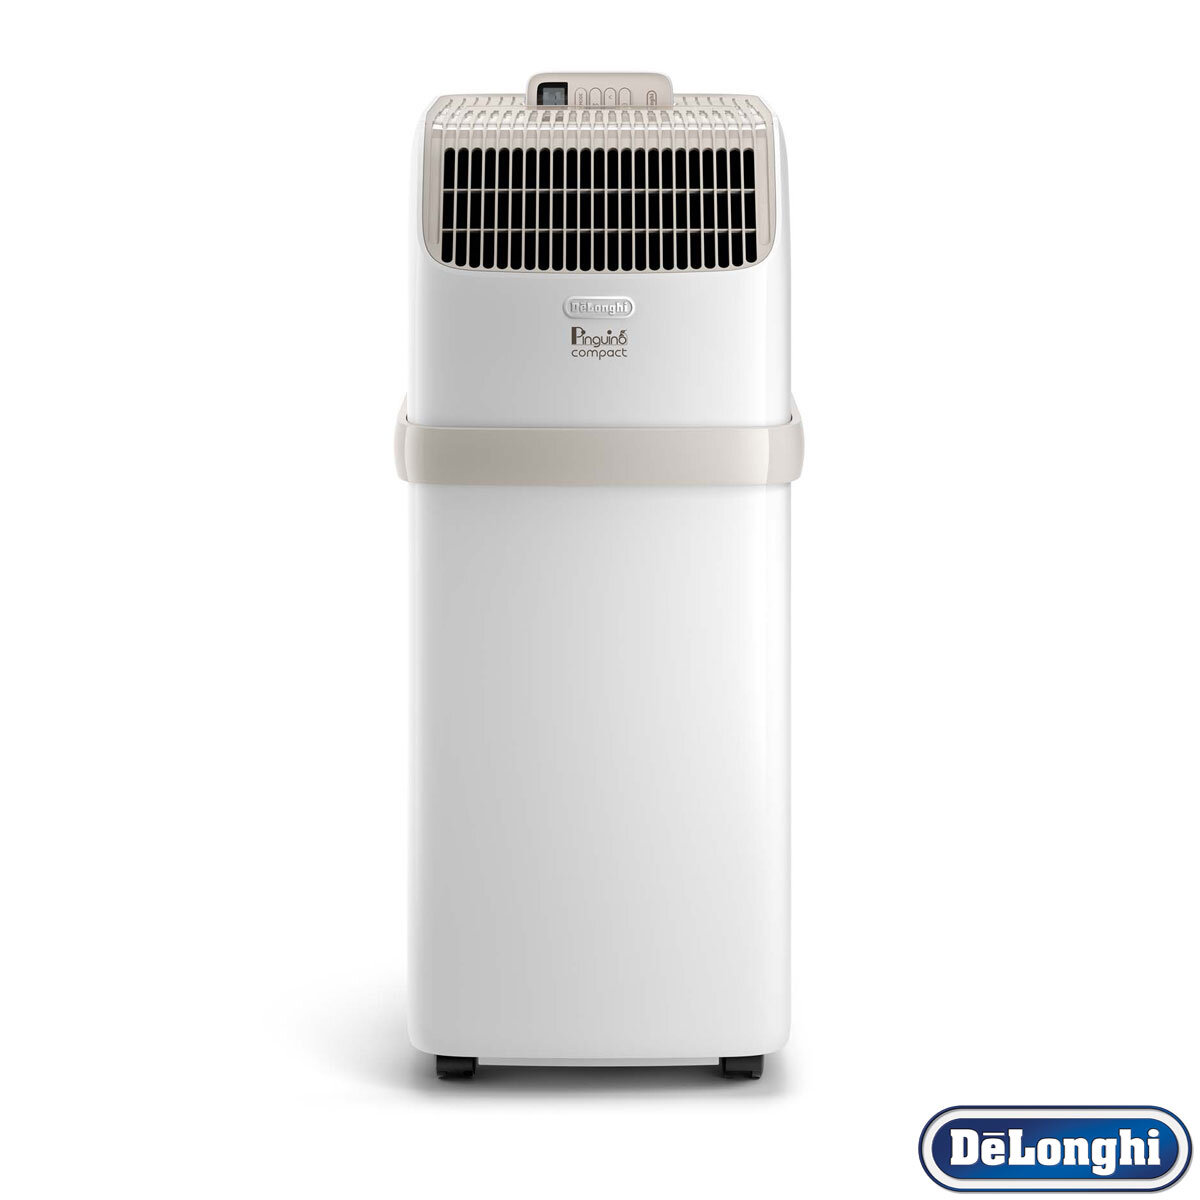 De'longhi 8.3K BTU Portable Air Conditioner with Remote C...